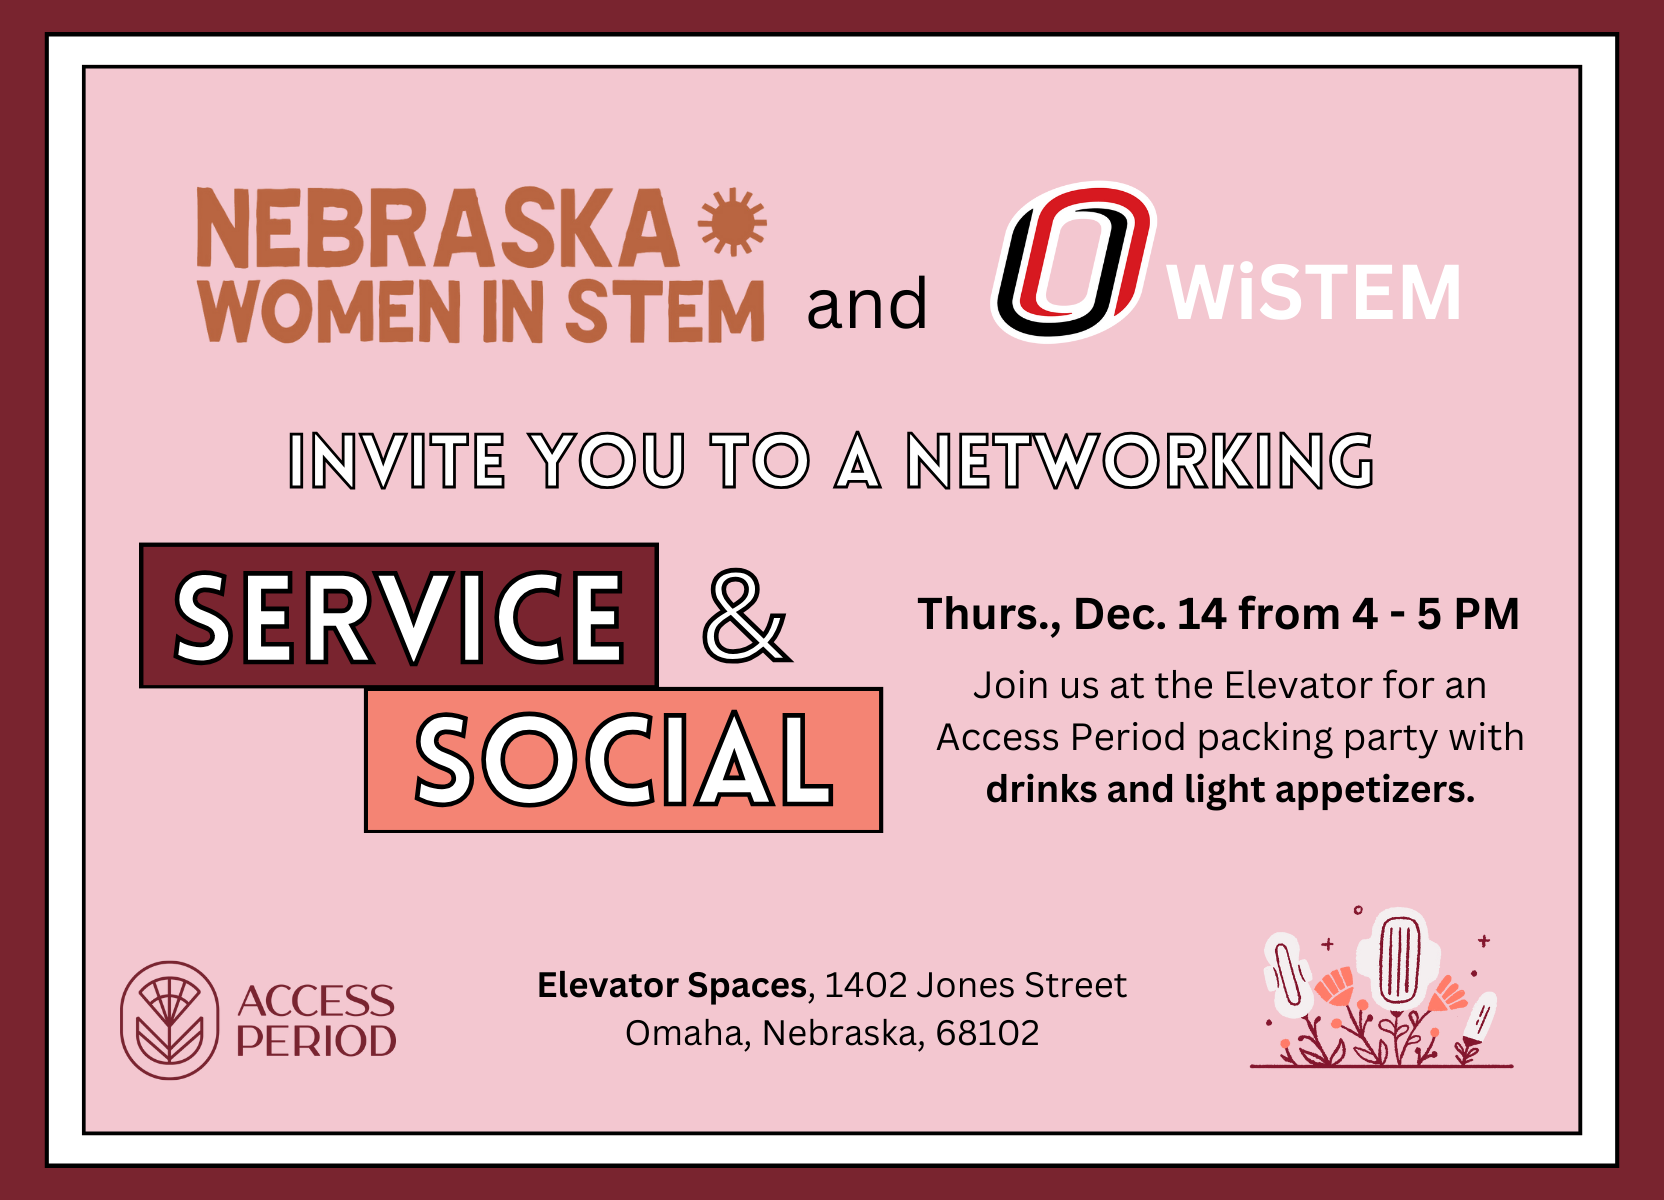 Nebraska Women in STEM and Nebraska Women in STEM invite you to a Networking Service & Social